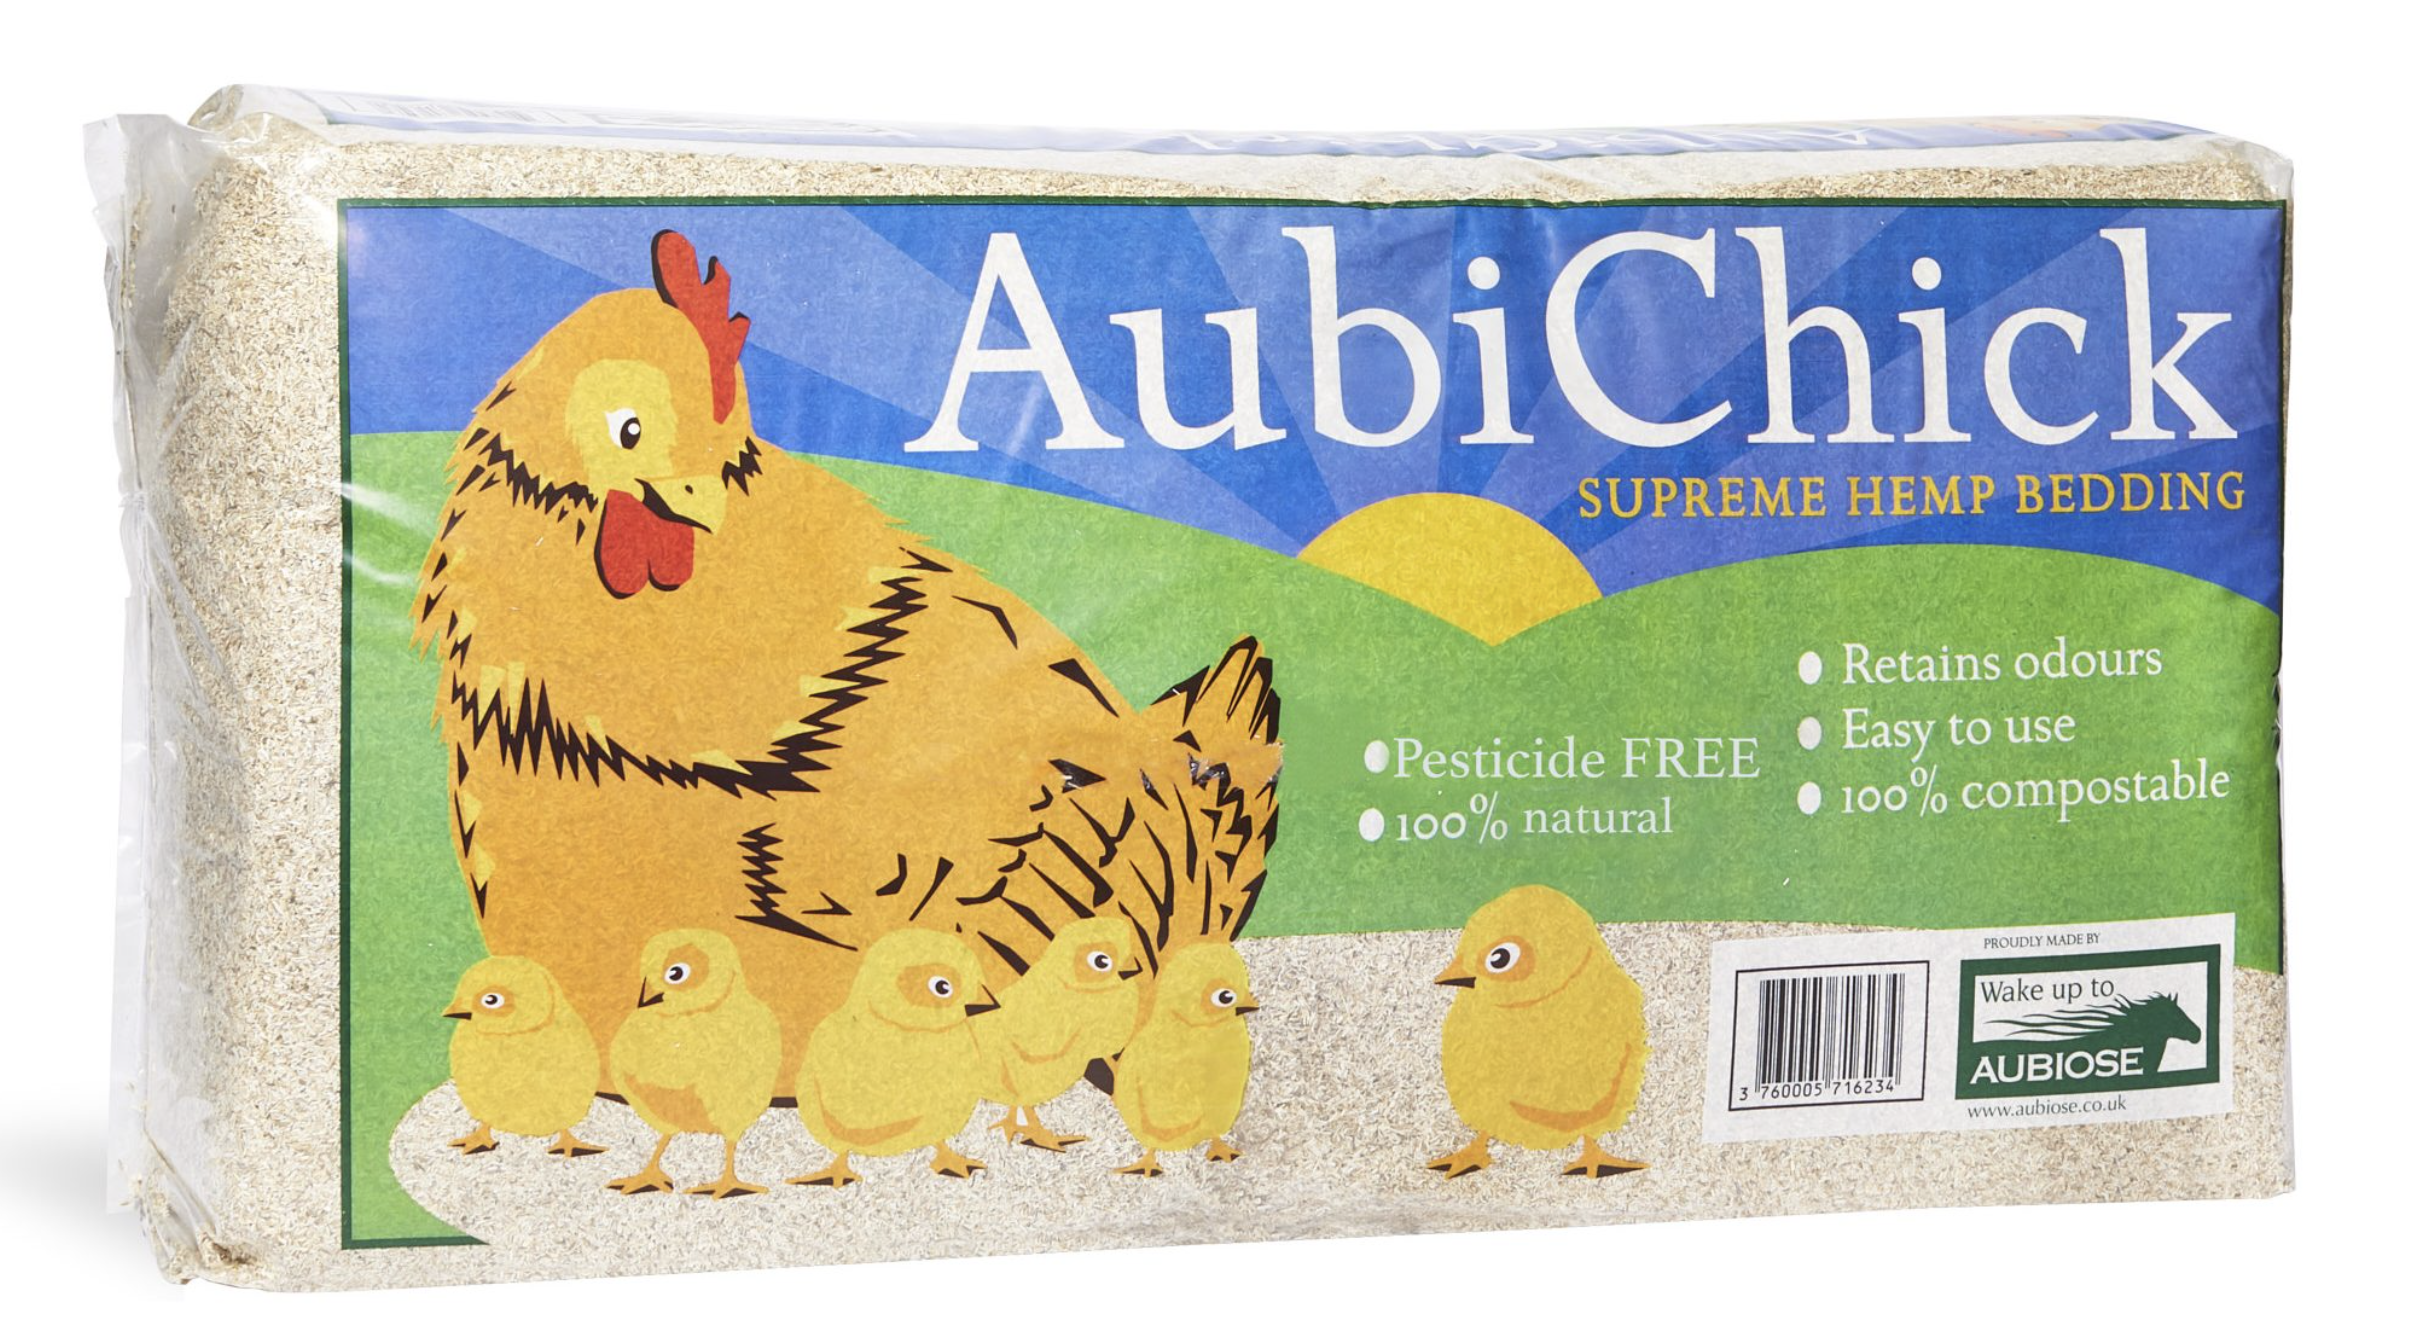 Aubichick Hemp Bedding for Chickens